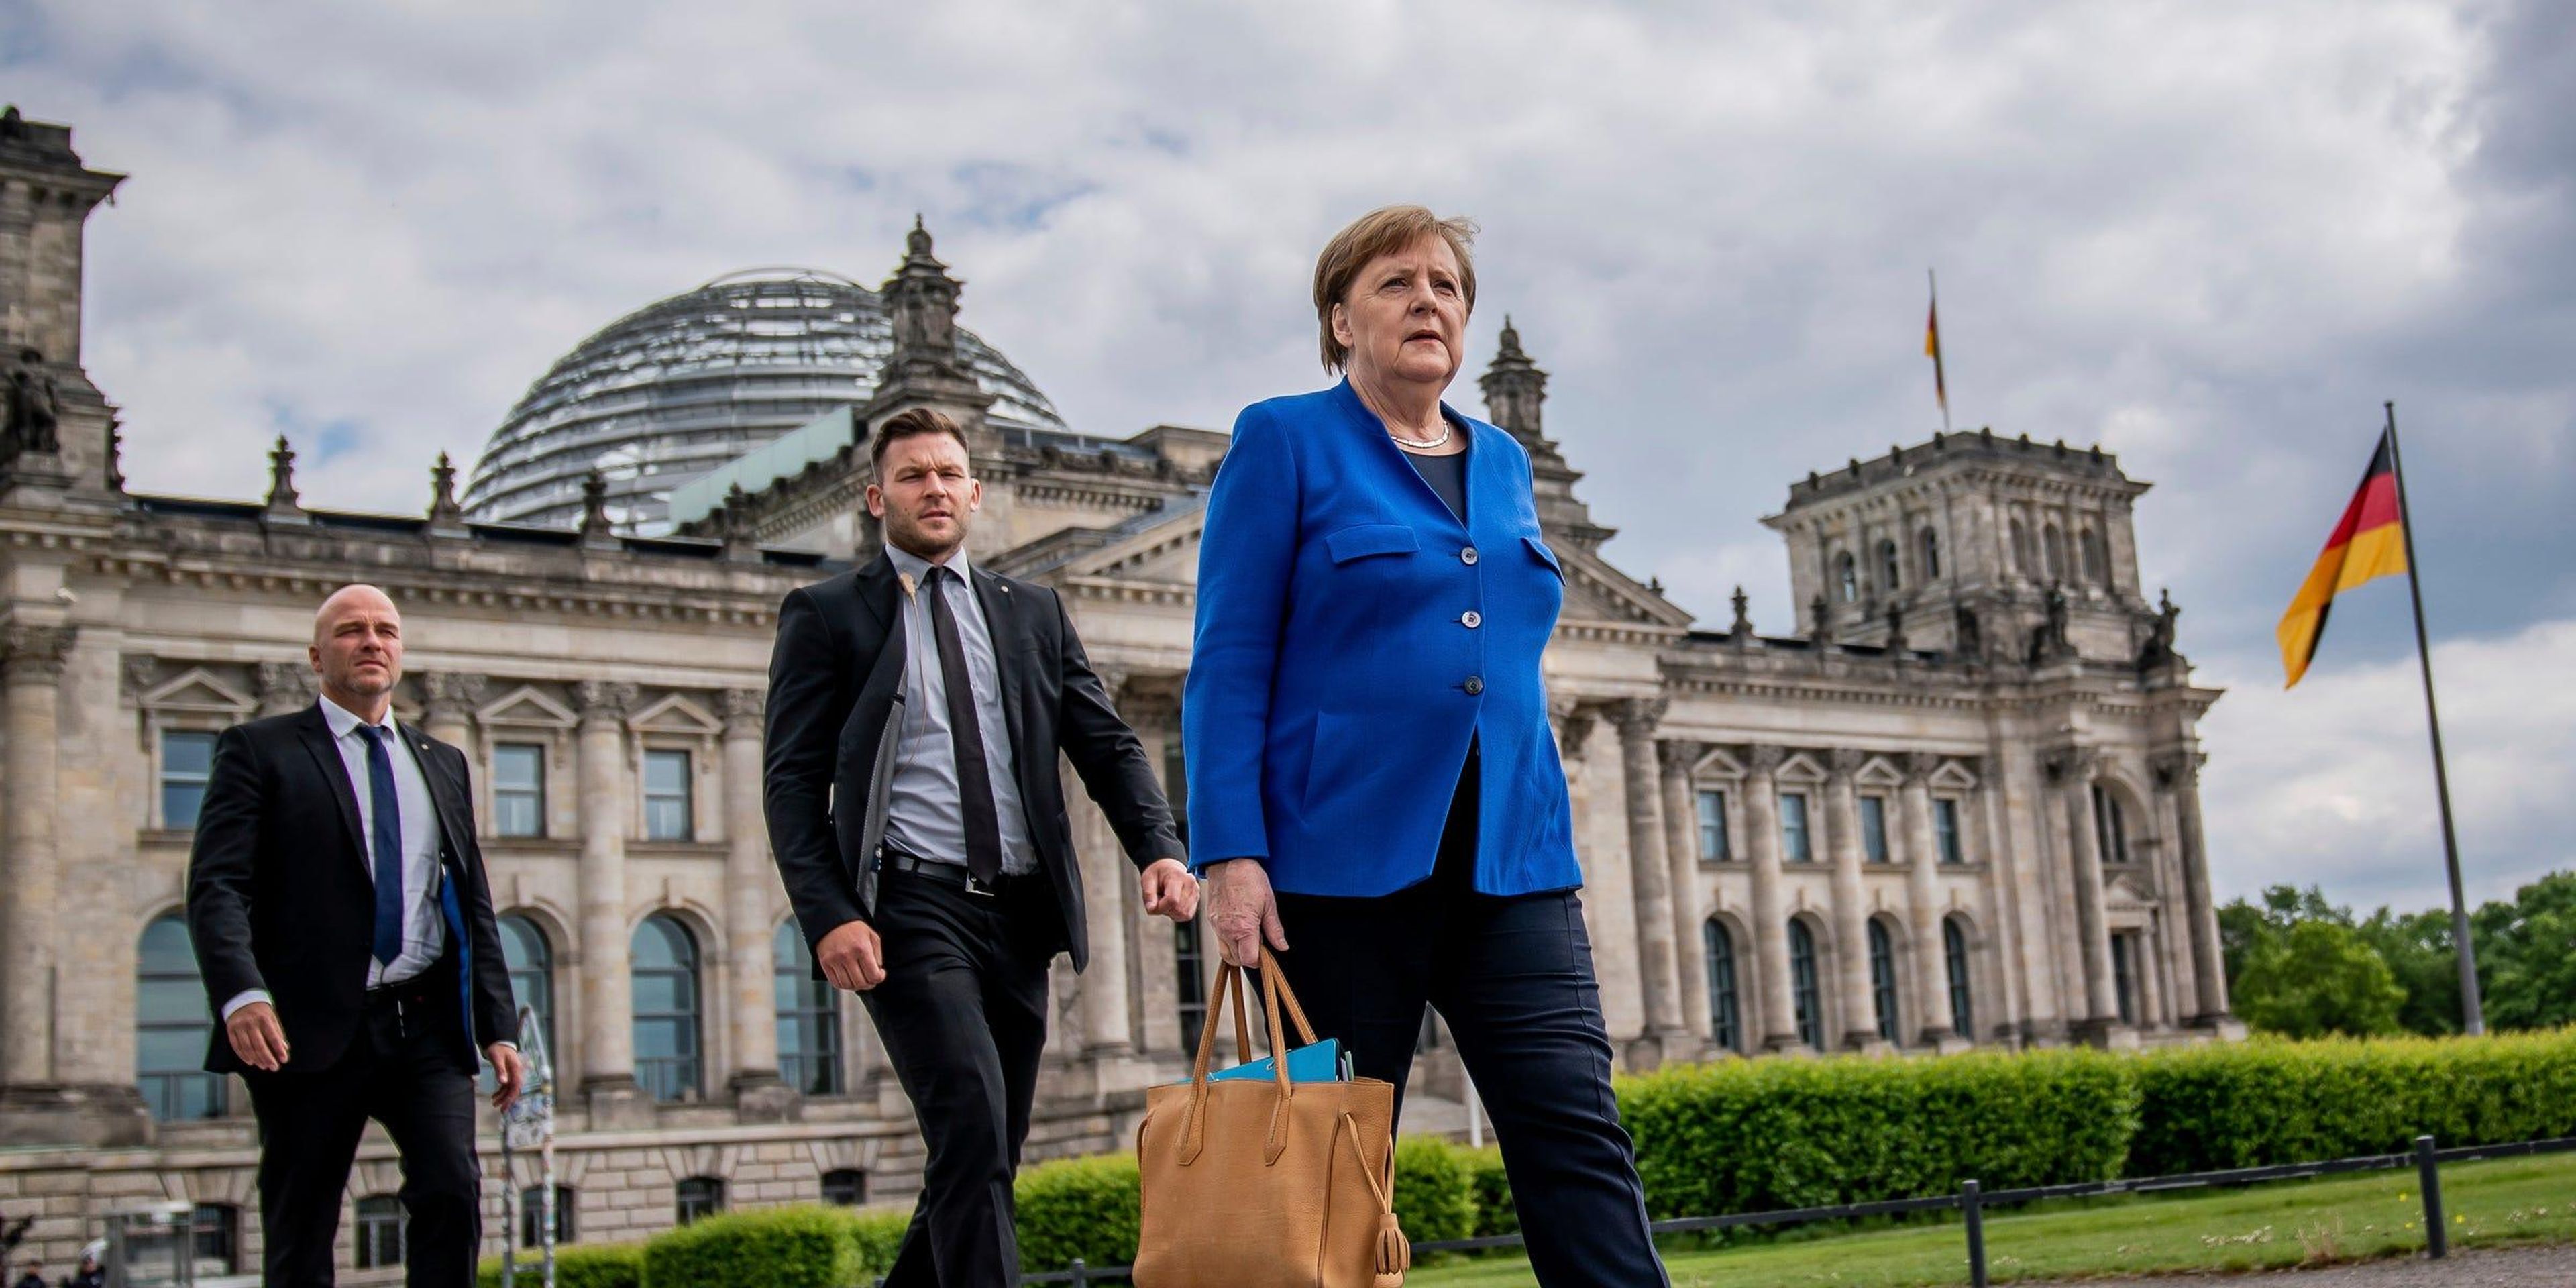 La canciller alemana Angela Merkel pasea con sus guardaespaldas por Berlín.